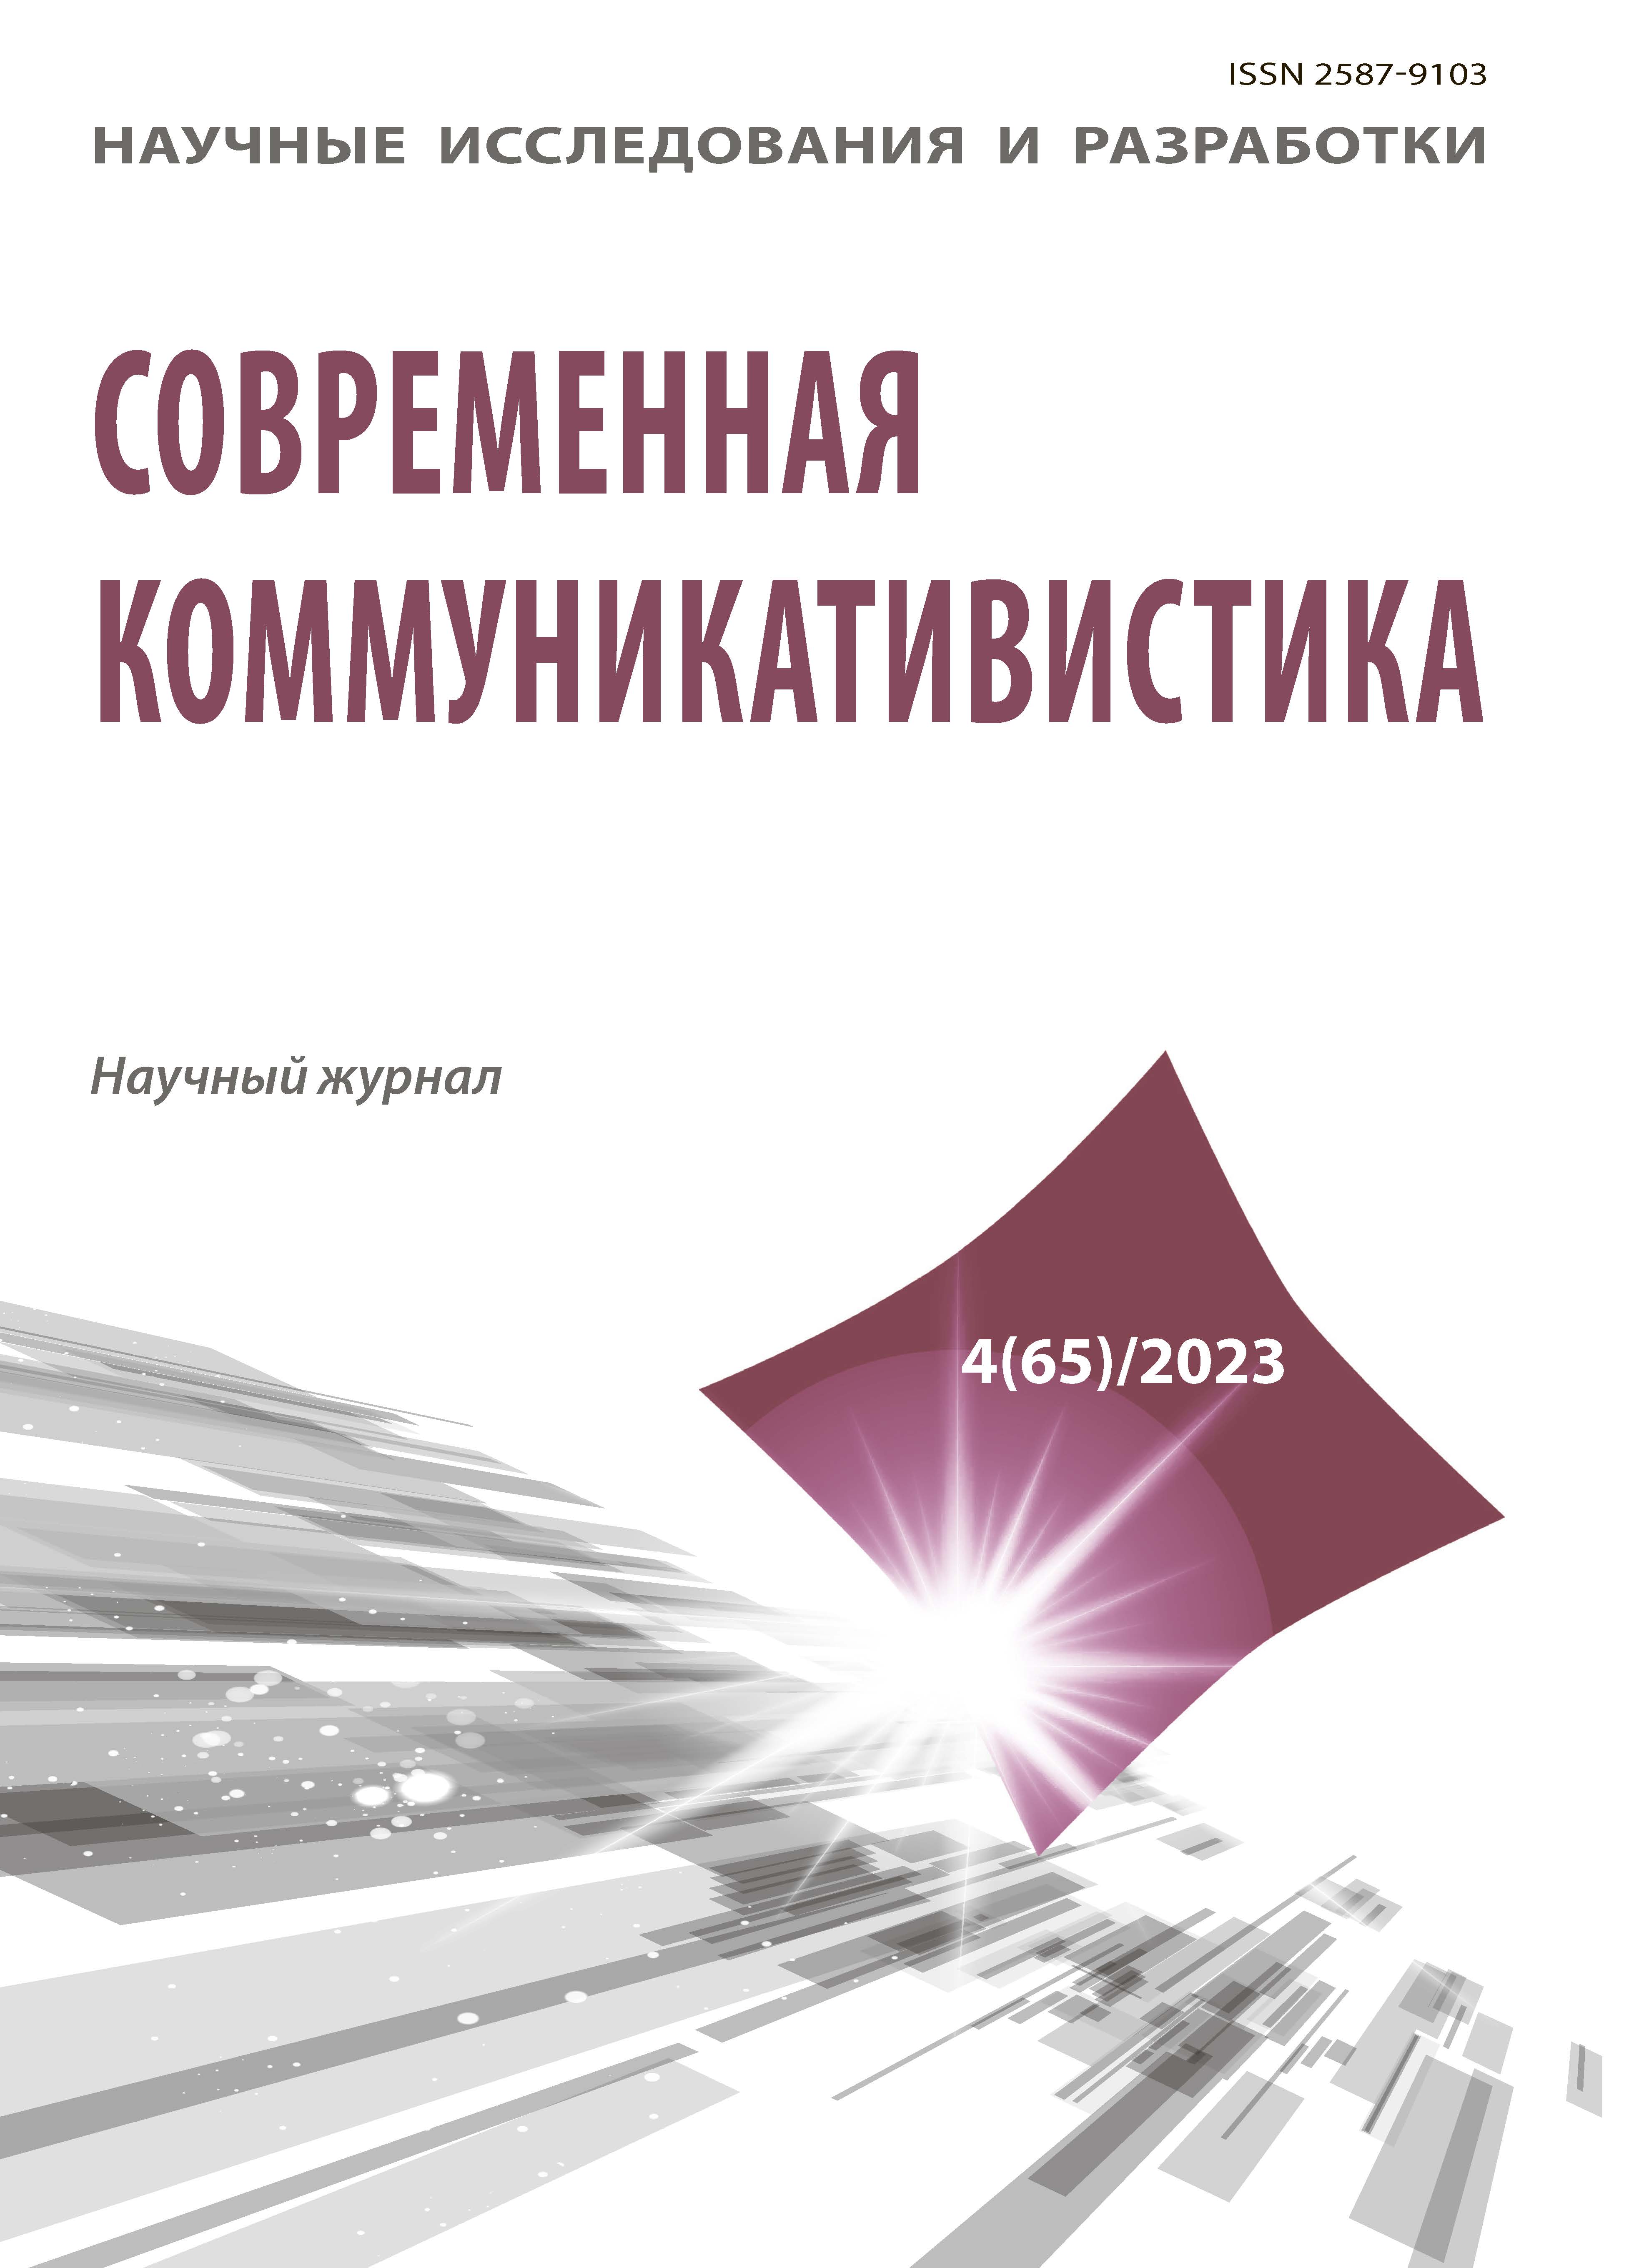             Новые соционимы в интернет-коммуникации 2000-2022 гг.: функционально-семантические характеристики
    